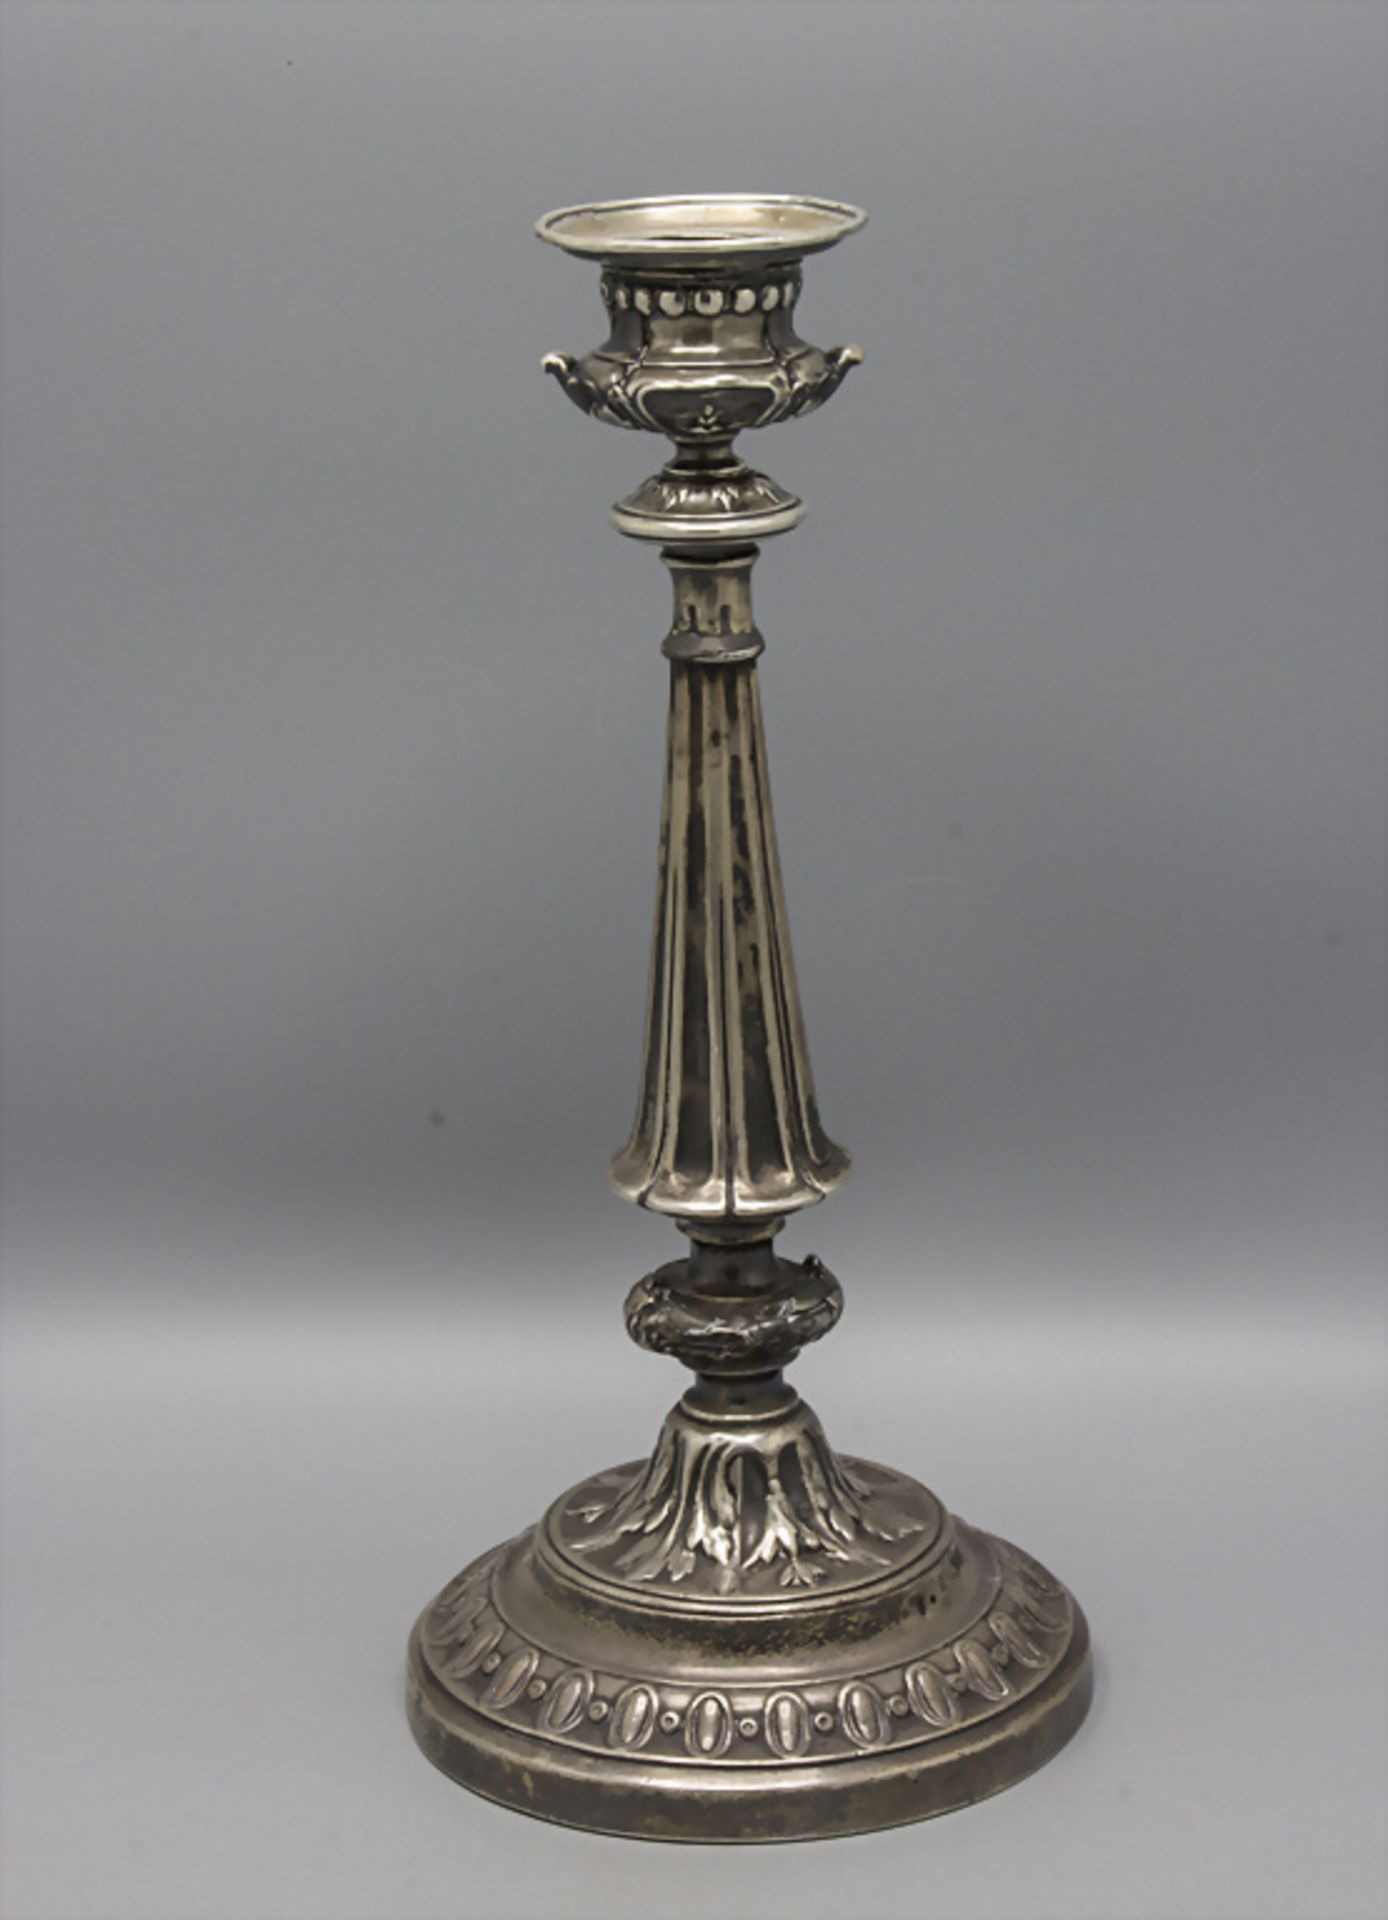 Silber-Leuchter / A silver candlestick, Paris, 19. Jh.